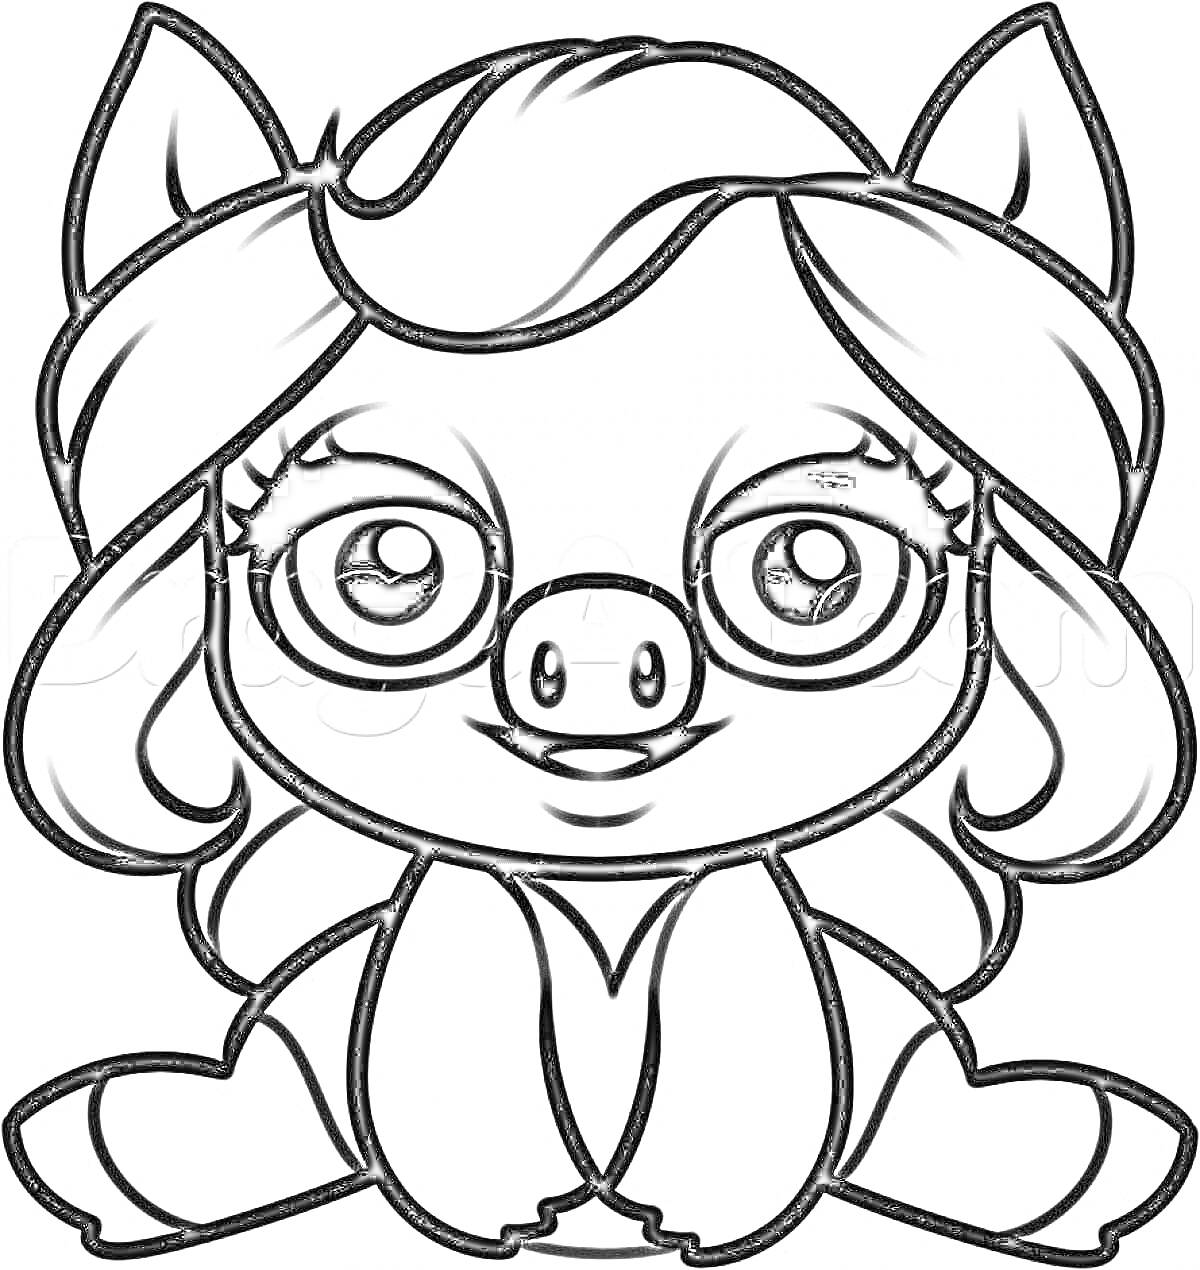 Раскраска Свинка с большими глазами и длинными волосами, сидящая с передними лапками и ушами, направленными вверх.